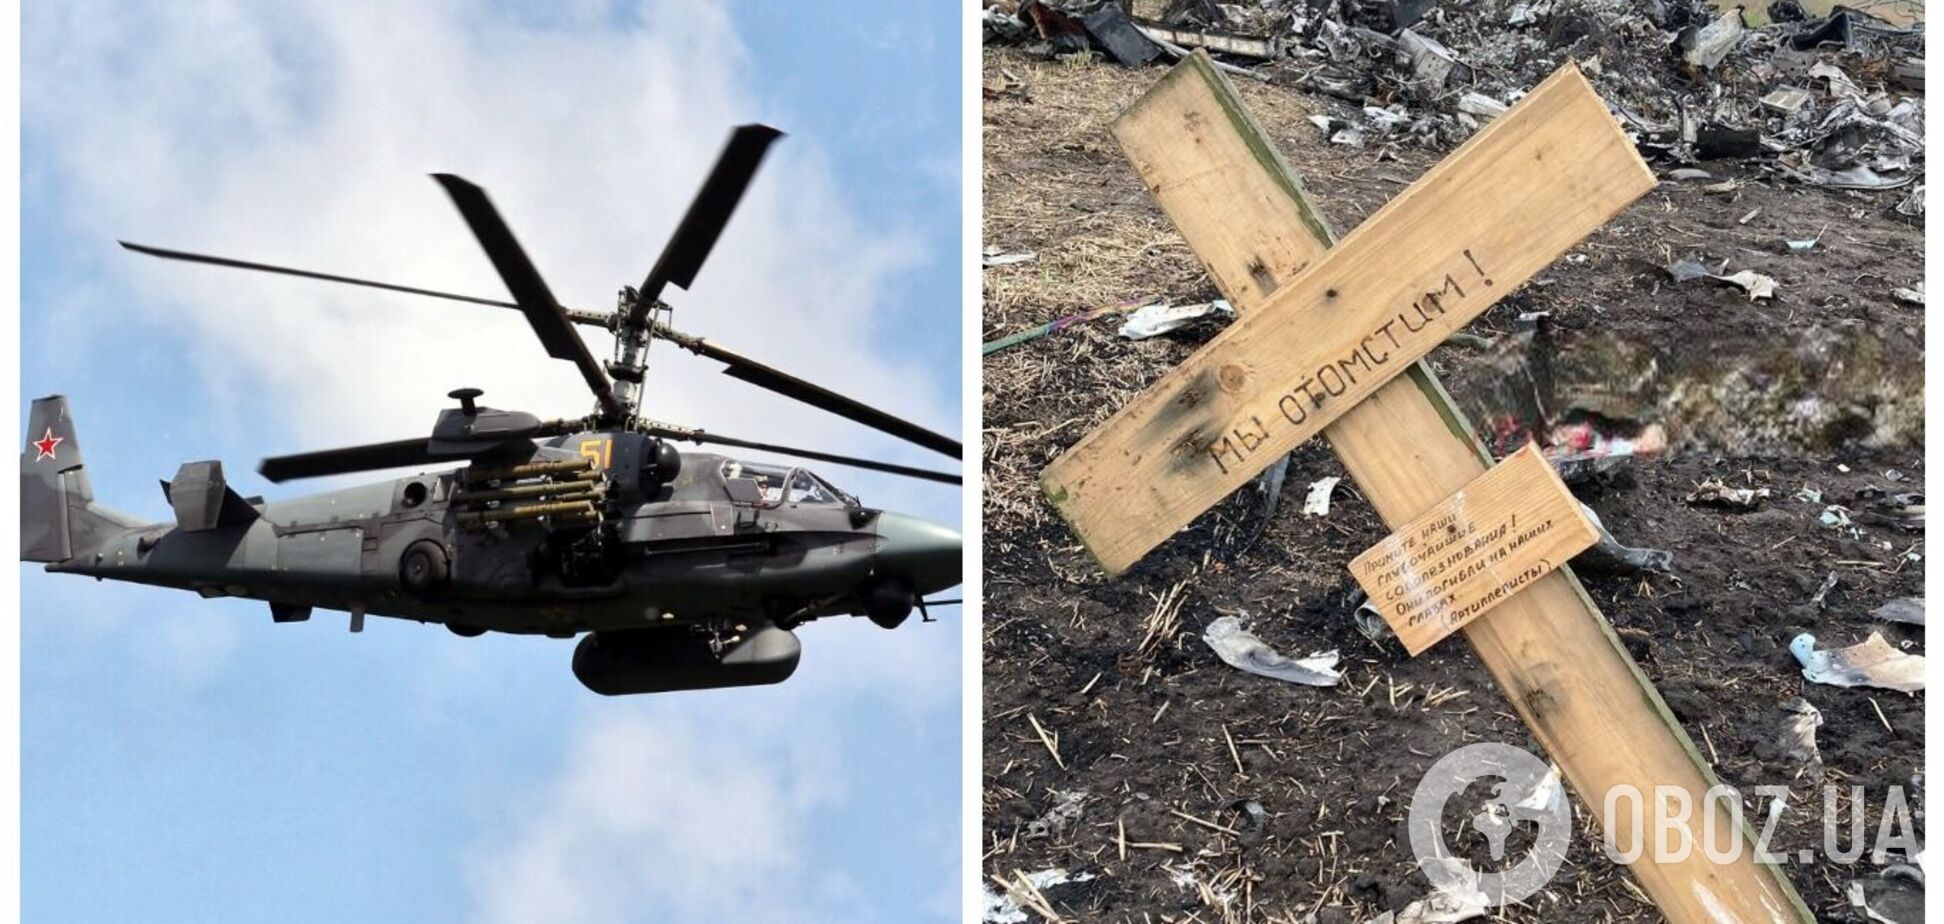 Відлітався: на Херсонщині знайшли рештки російського гелікоптера Ка-52, знищеного разом з екіпажем. Фото і відео 